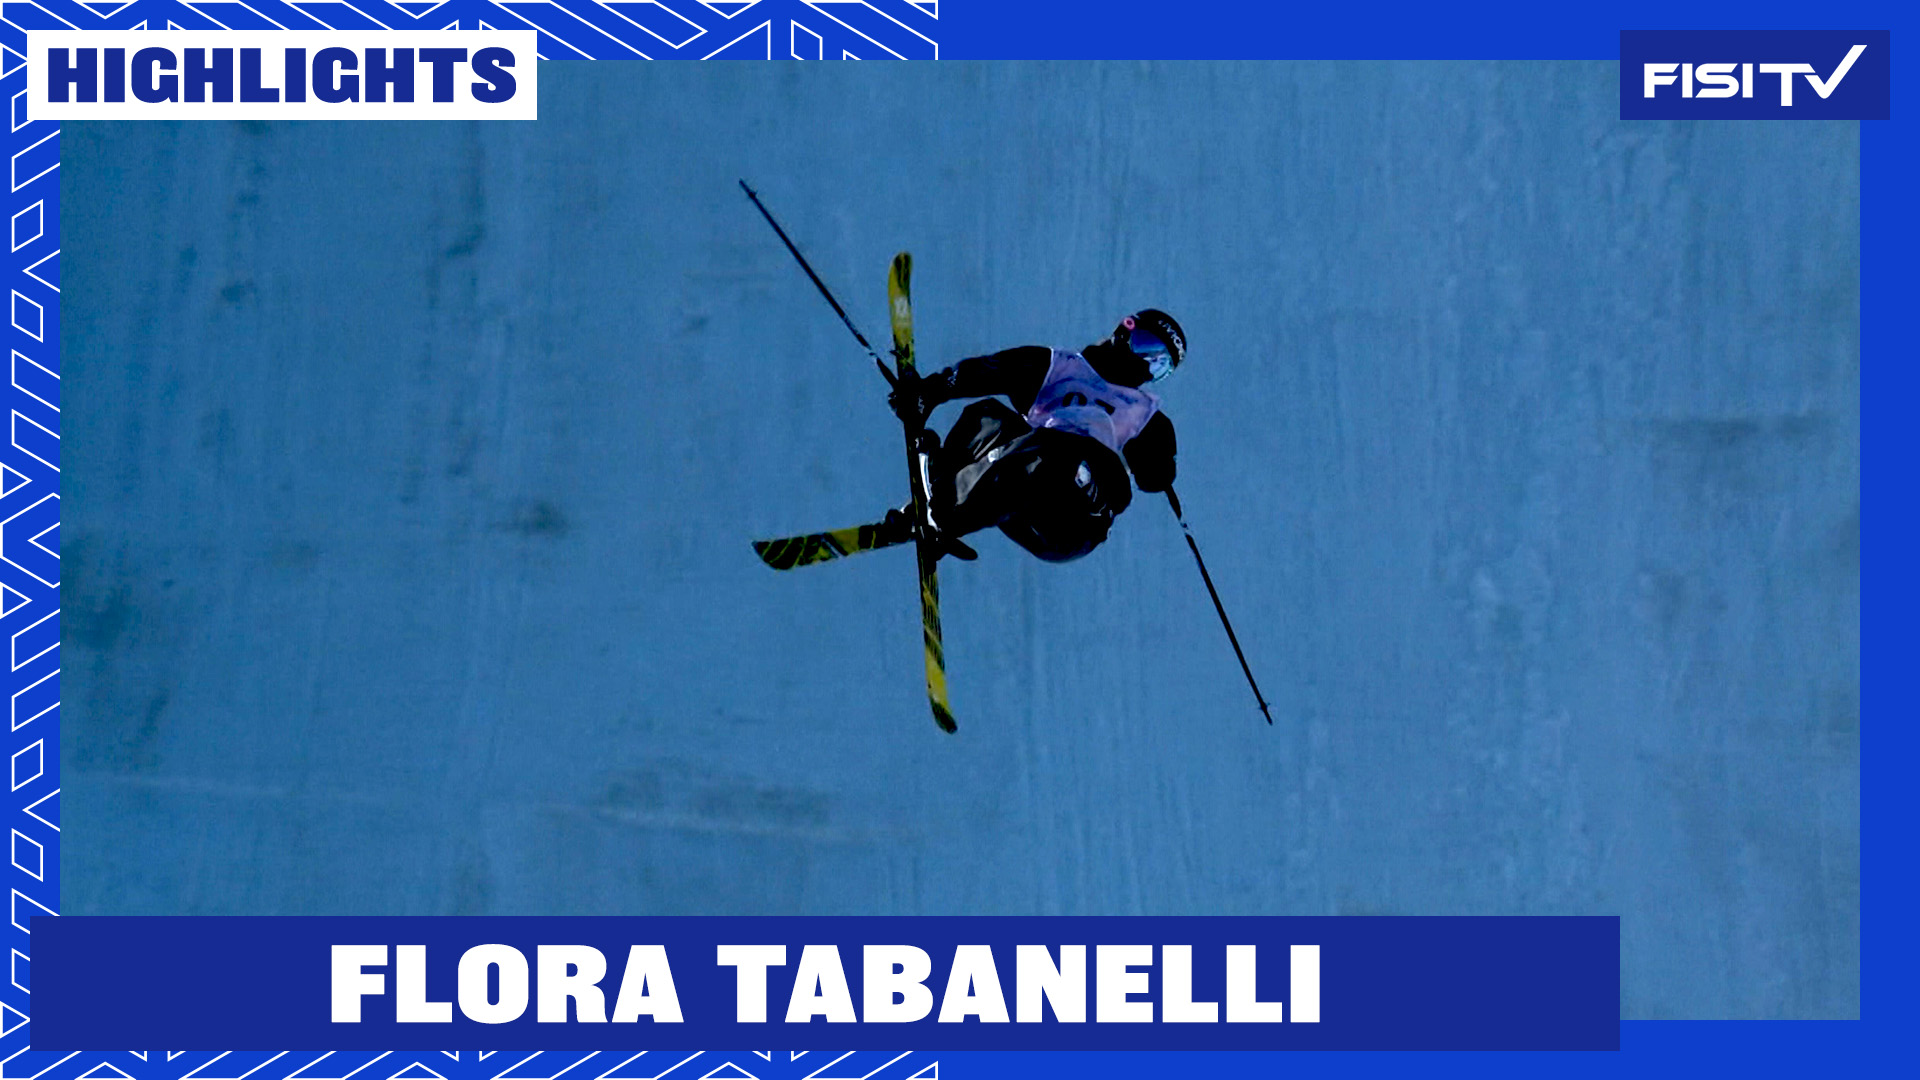 La prima volta sul podio in Coppa del Mondo per Flora Tabanelli | FISI TV